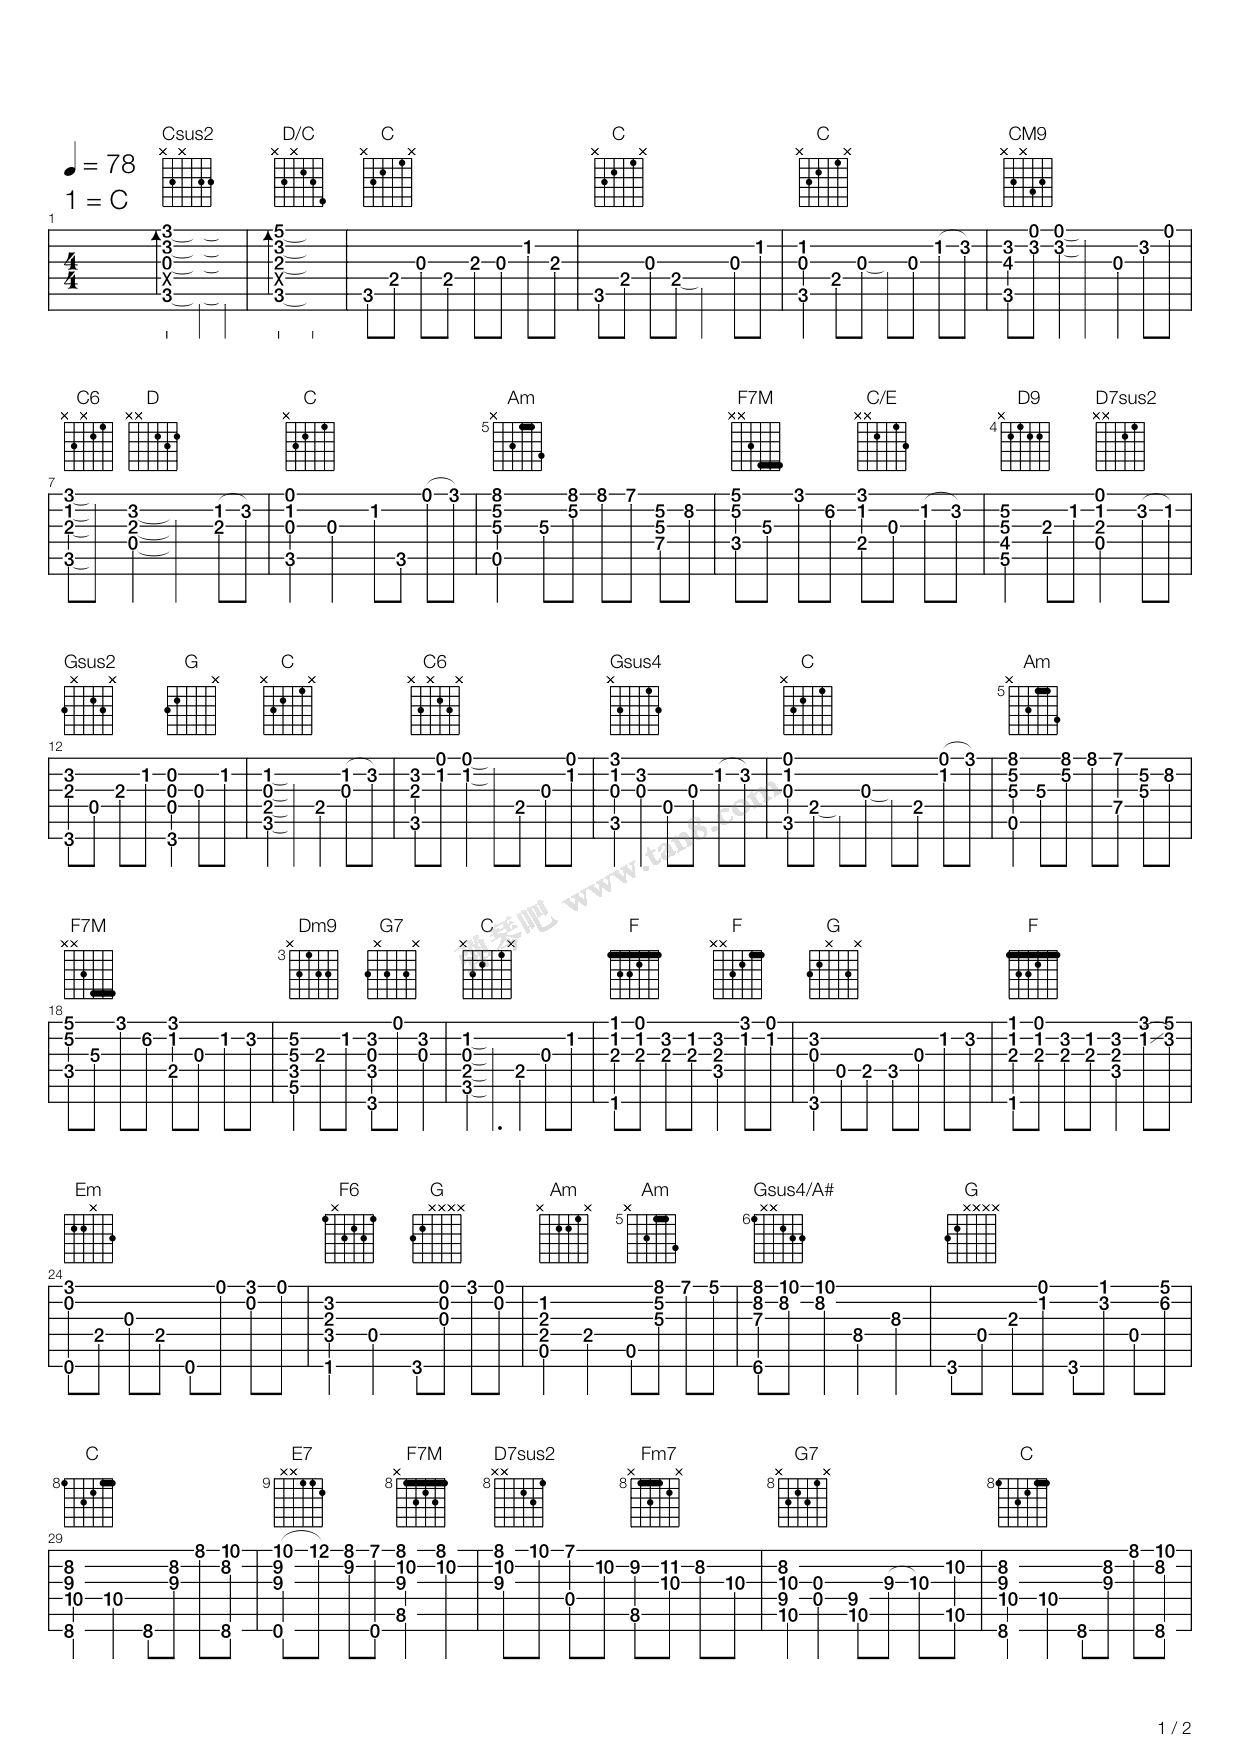 幽灵公主主题曲-宫崎骏动画-钢琴谱文件（五线谱、双手简谱、数字谱、Midi、PDF）免费下载